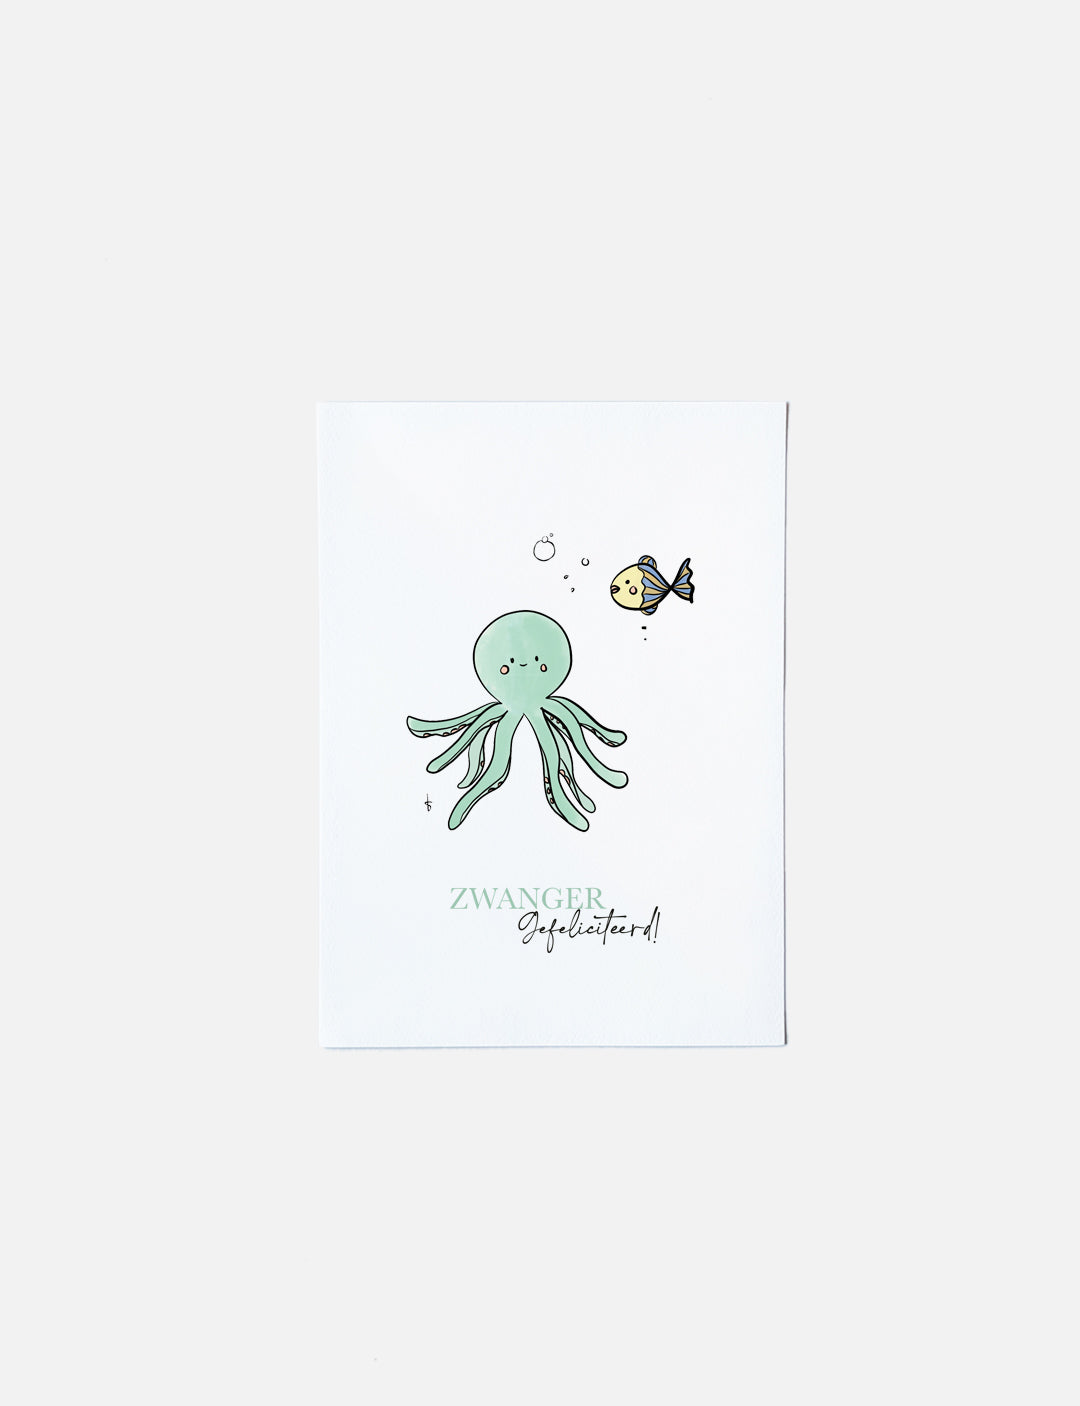 Deze felicitatiekaart op A6 formaat heeft een handgetekende illustratie van een schattige octopus en vis met de tekst: Zwanger Gefeliciteerd! Unieke kaarten kopen kun je in onze webshop. Neem een kijkje voor nog meer illustratiekaarten.